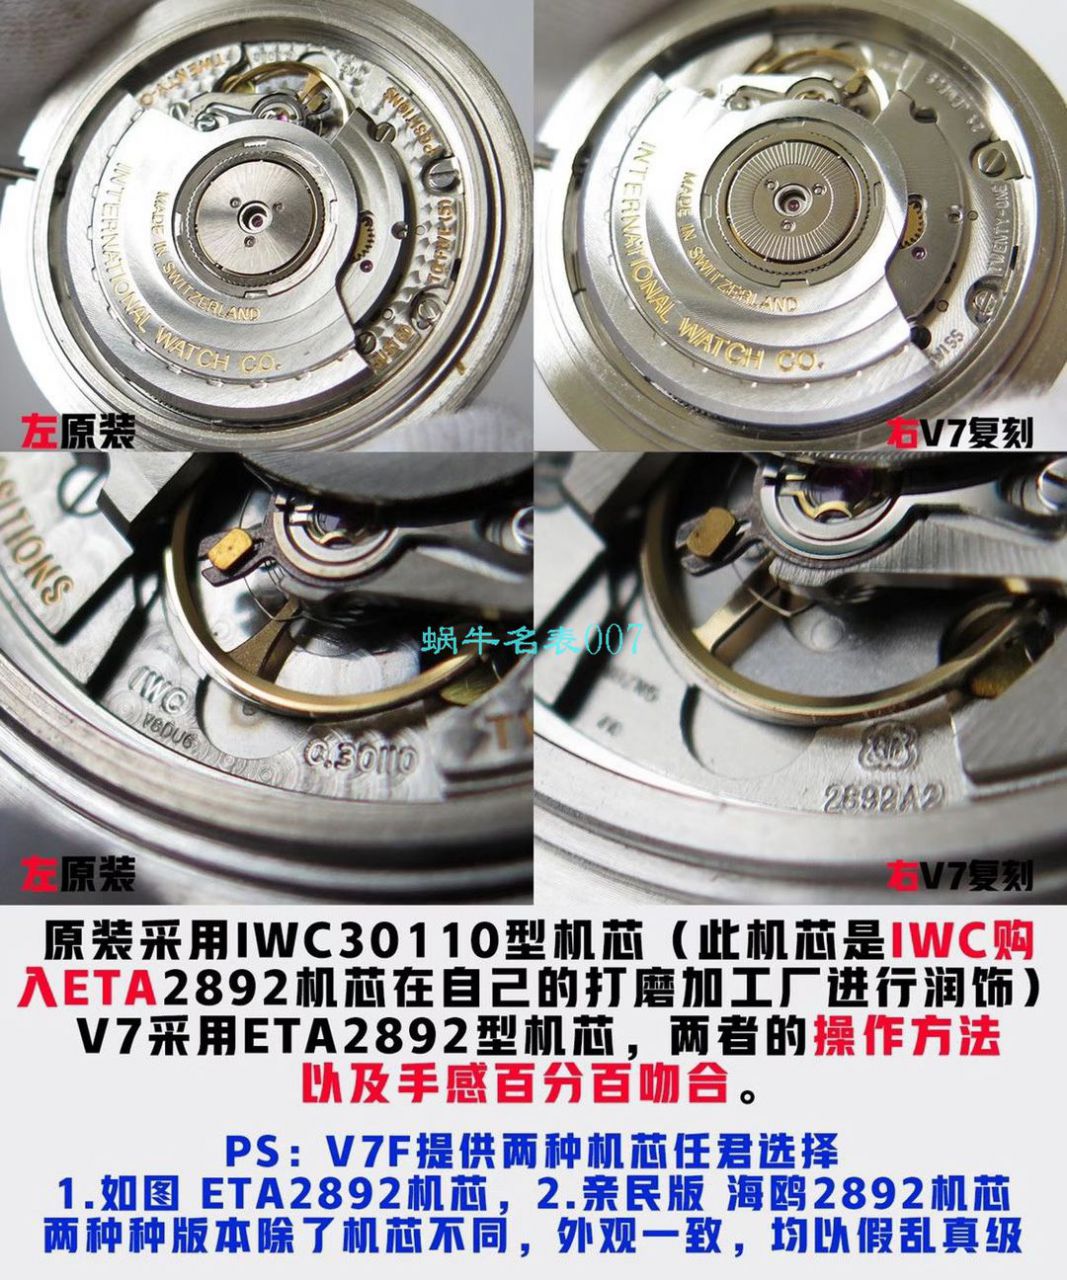 【视频评测】V7厂万国马克十八钢带款IW327002腕表 